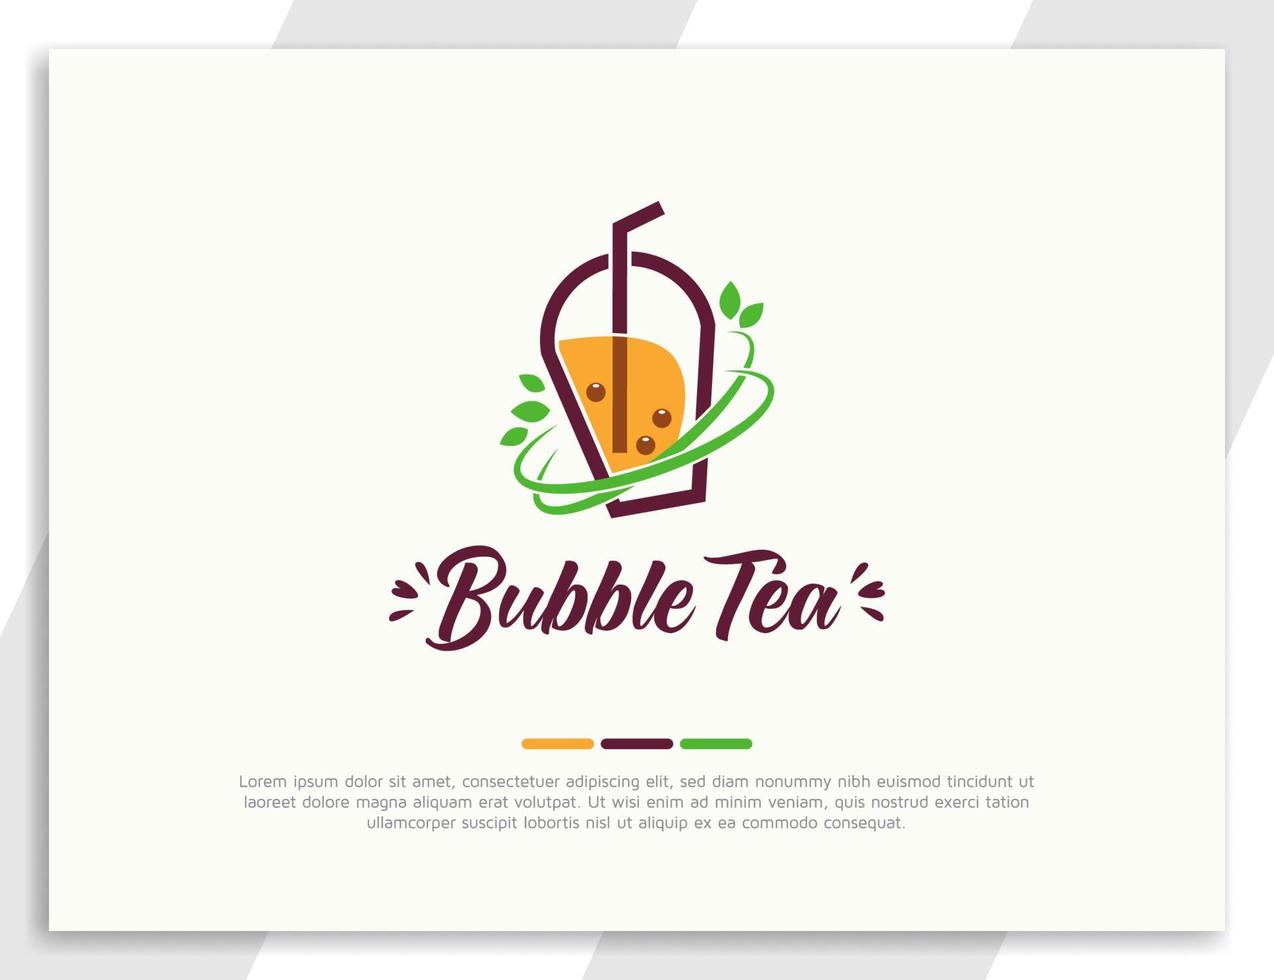 vers bubbelthee-logo met groene bladeren vector